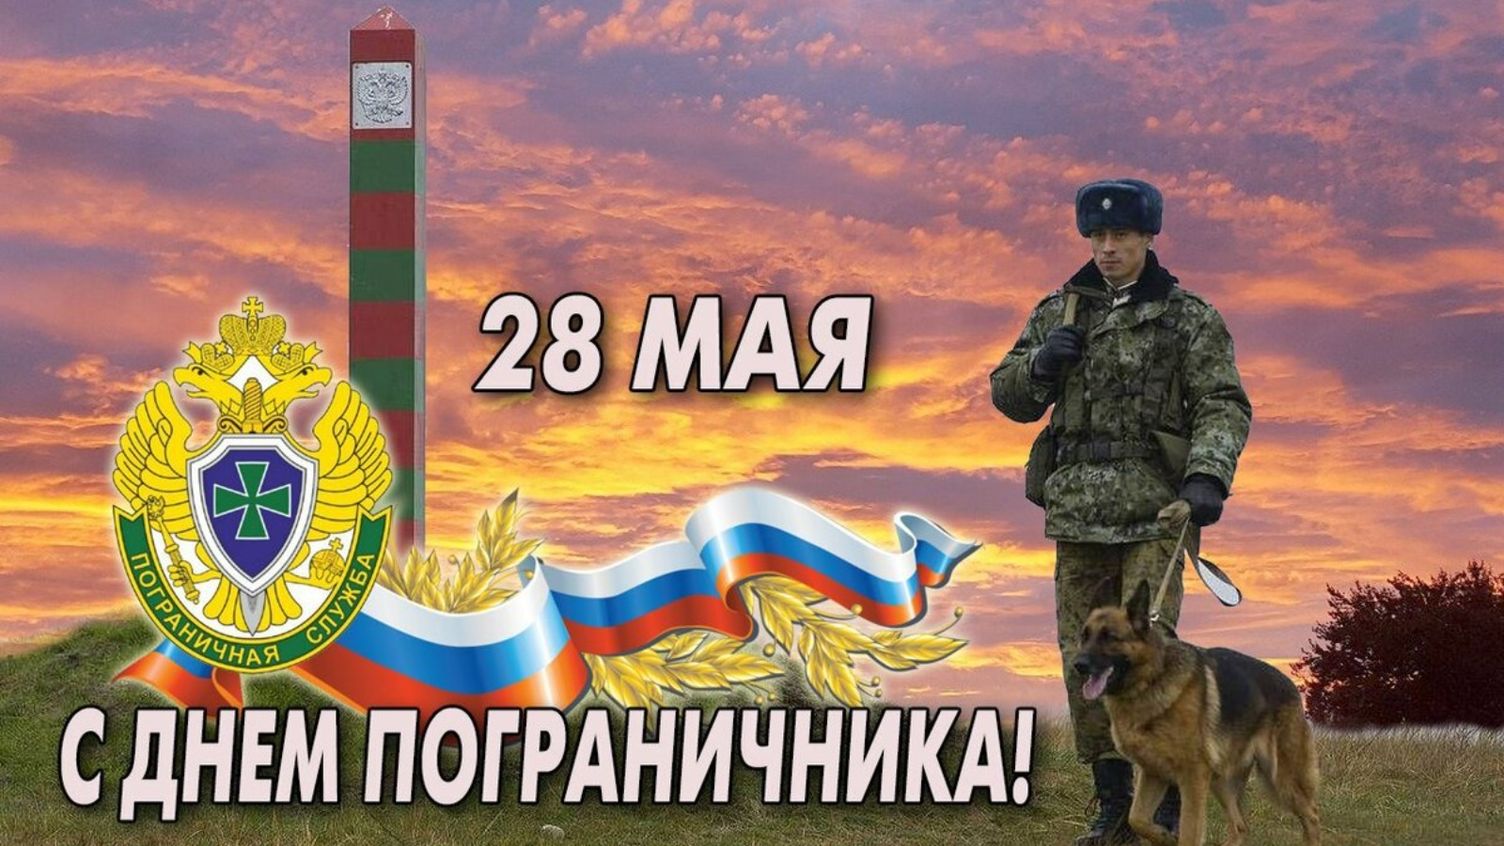 28 мая День пограничника России! Музыкальное поздравление с Днём пограничника!